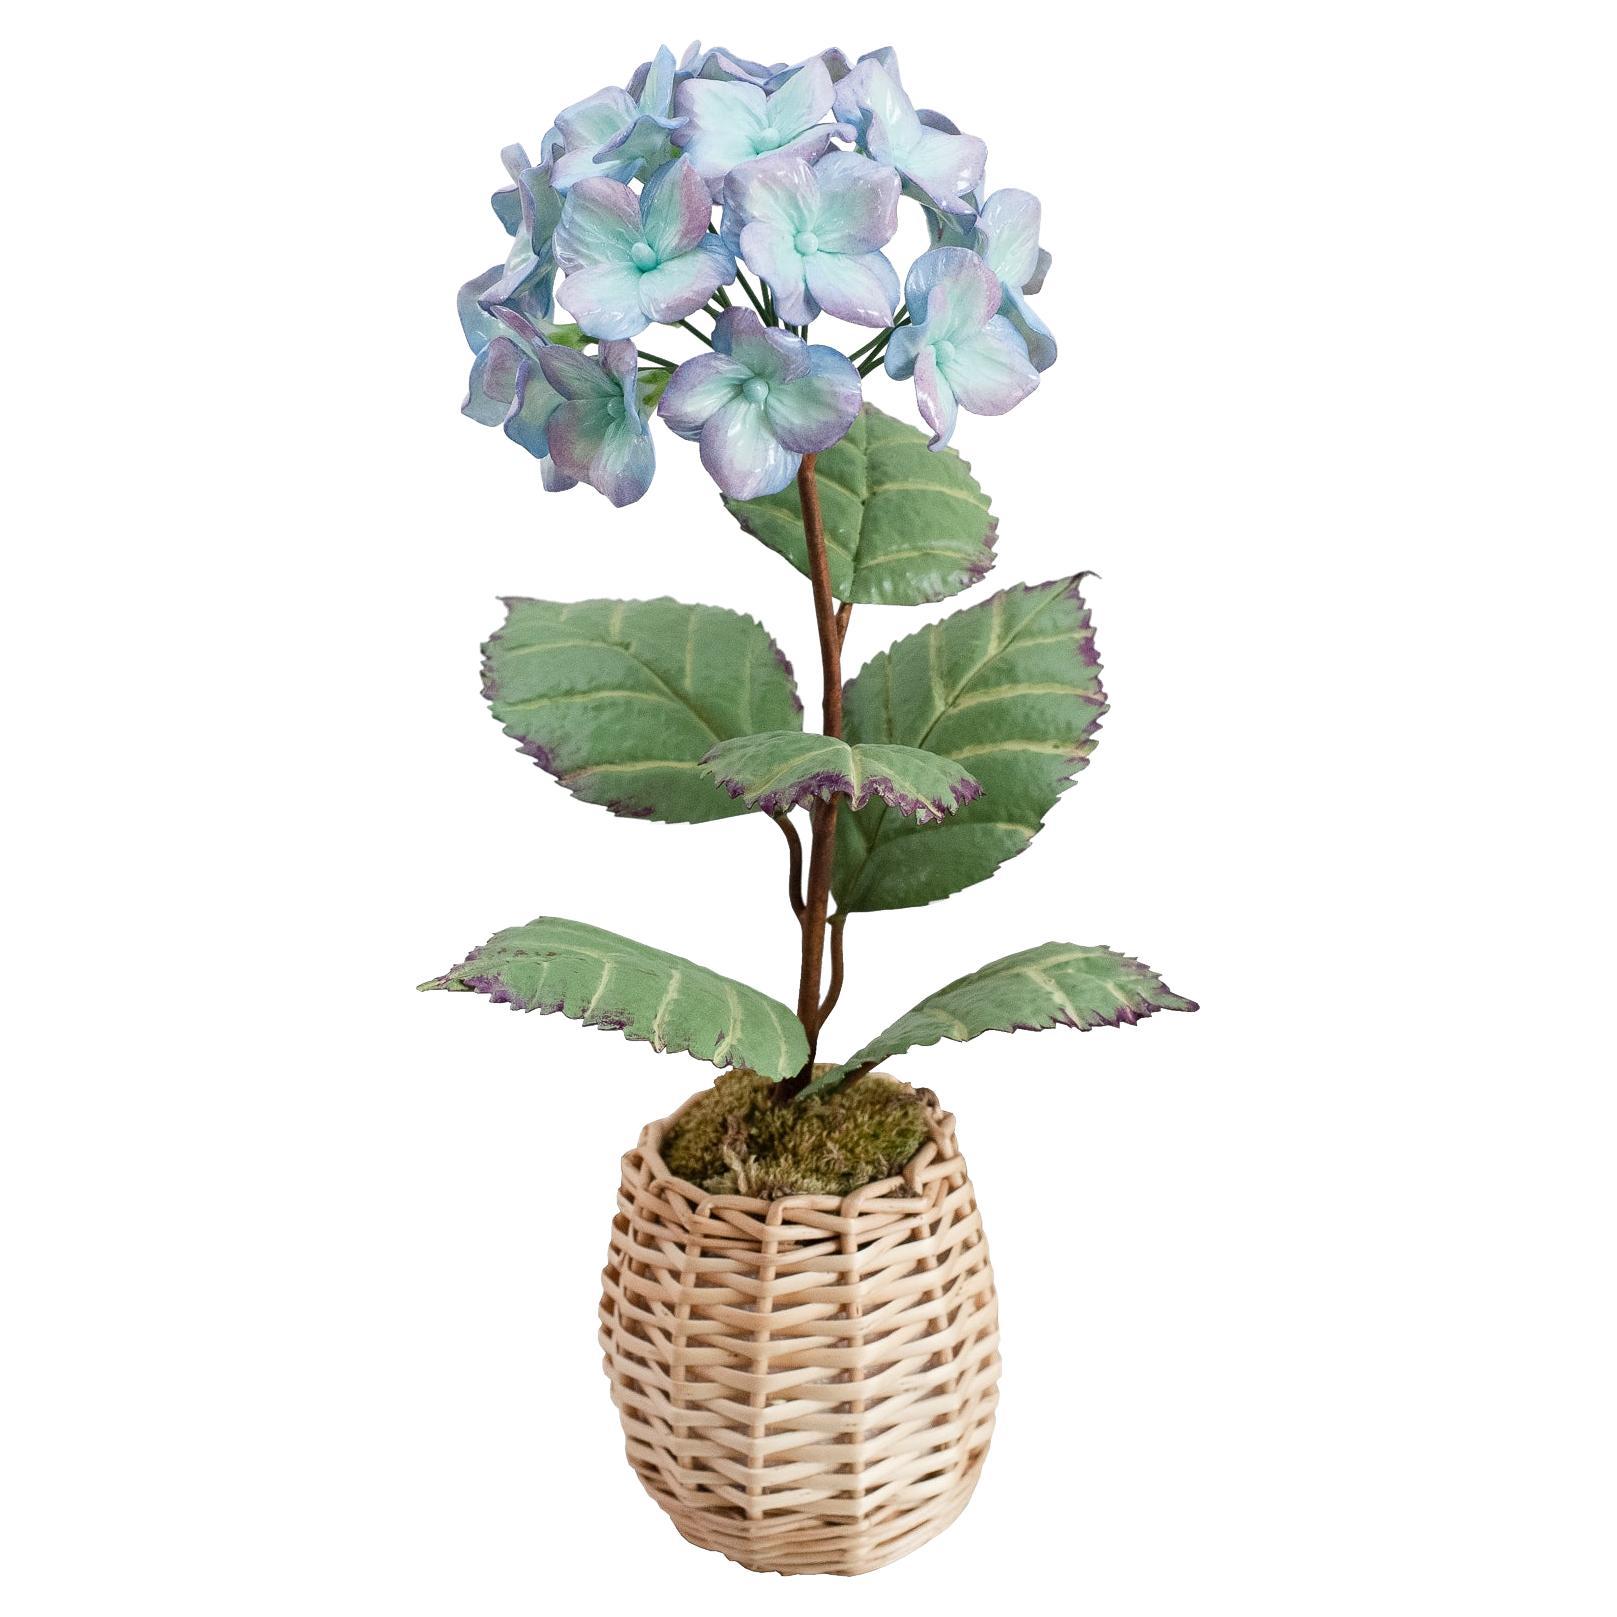 Samuel Mazy Lila und blau glasierte Hydrangea-Blumen-Skulptur aus Porzellan